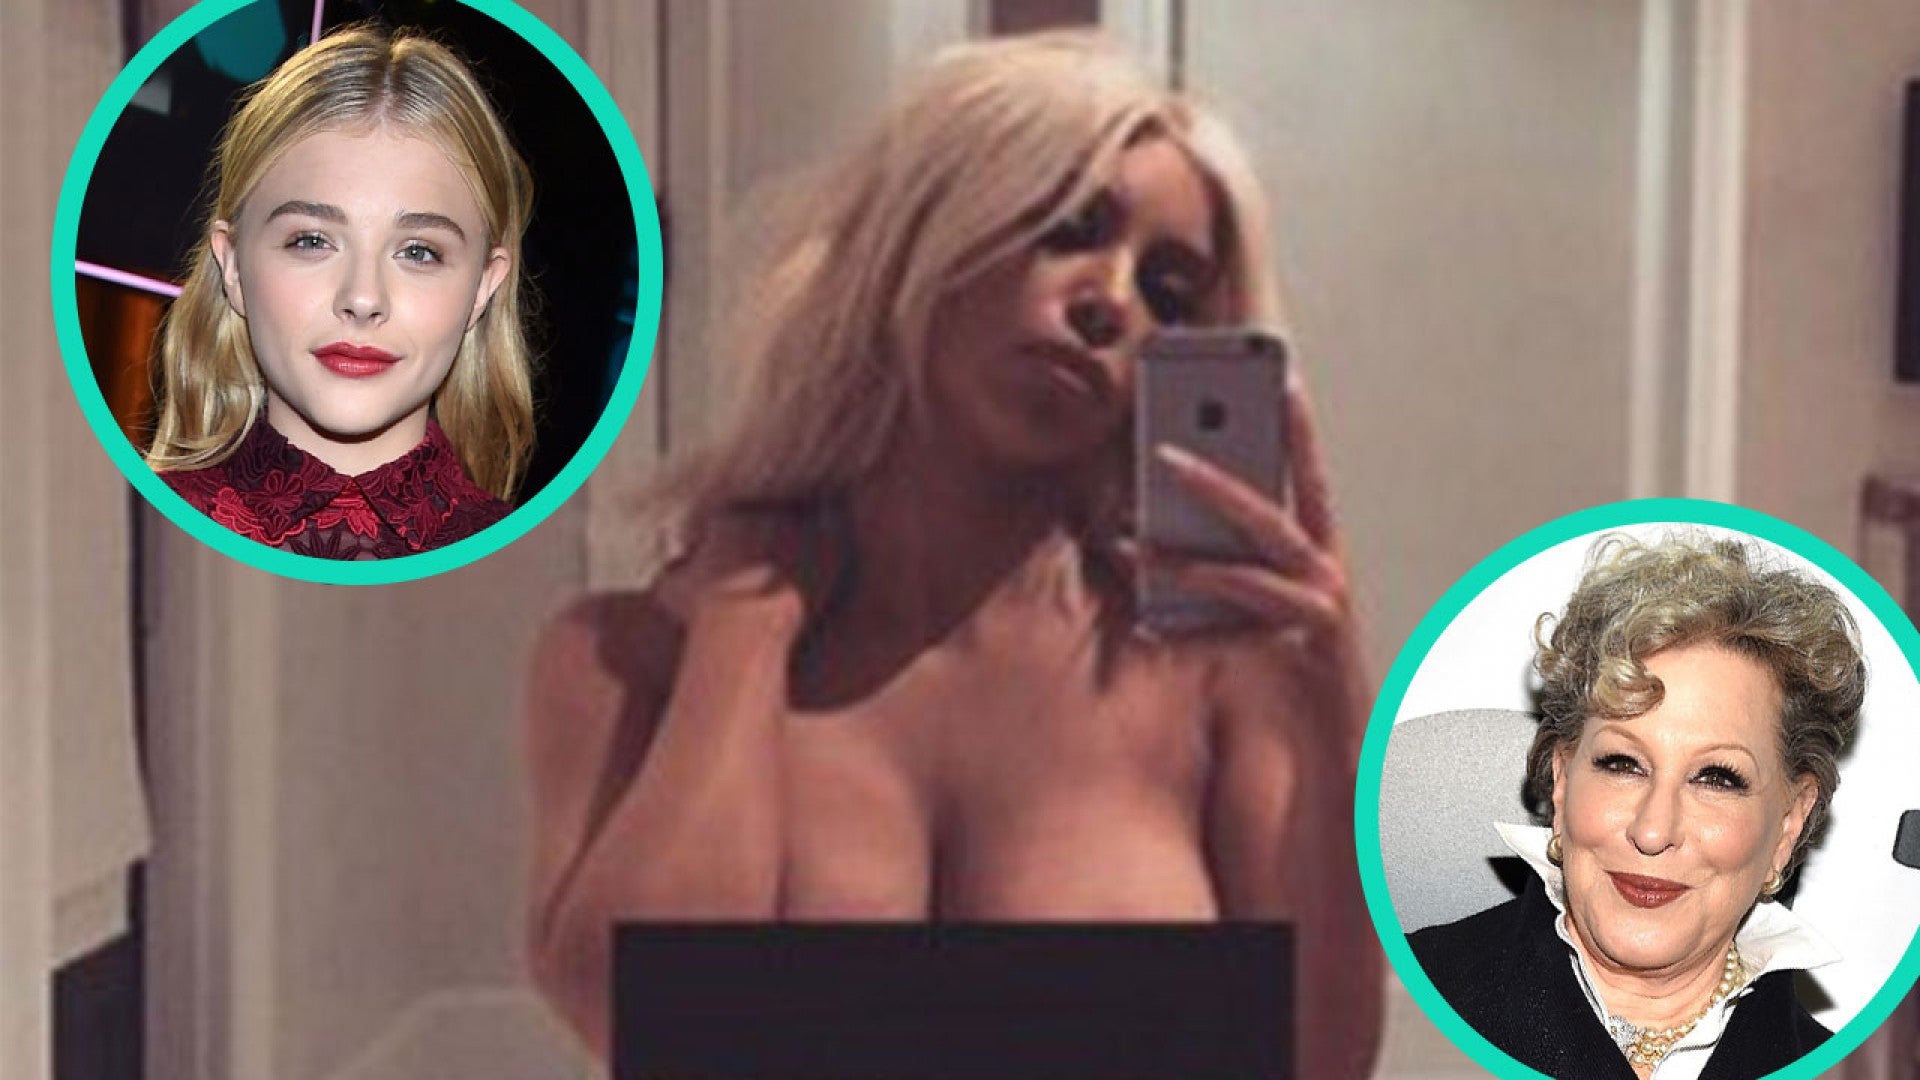 Bette Midler and Chloe Grace Moretz Diss Kim Kardashian For Posting Nude  Selfie